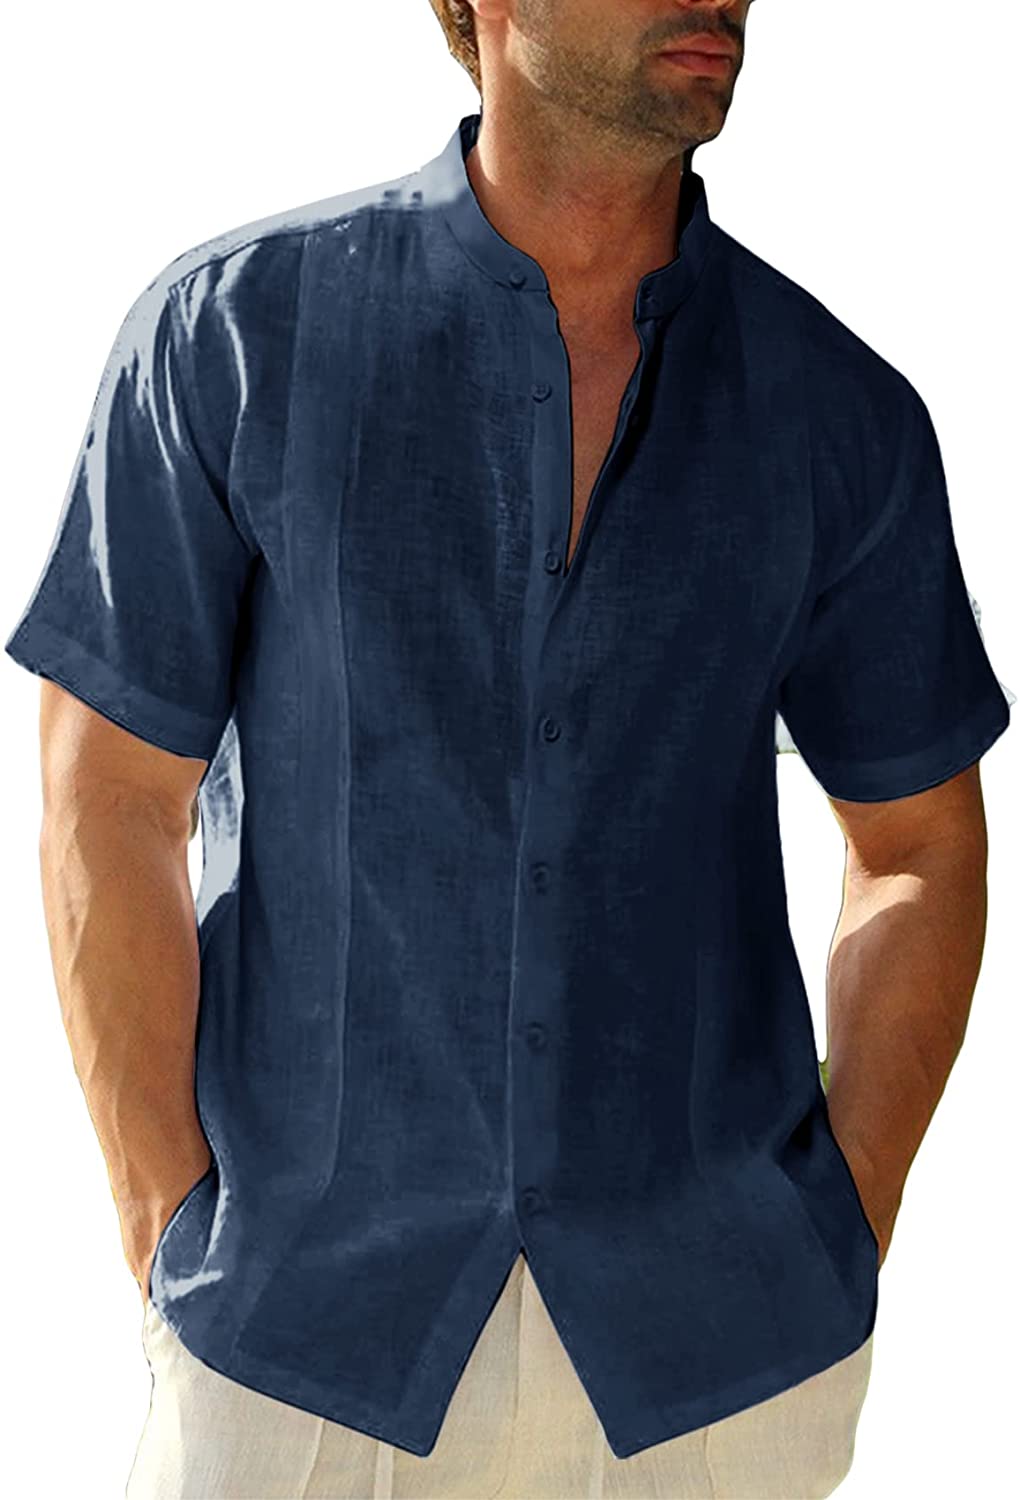  Basketball is Life Men‘s Short Sleeve Button Down Shirts Cuban  Guayabera Shirt Beach Tops : Sports & Outdoors